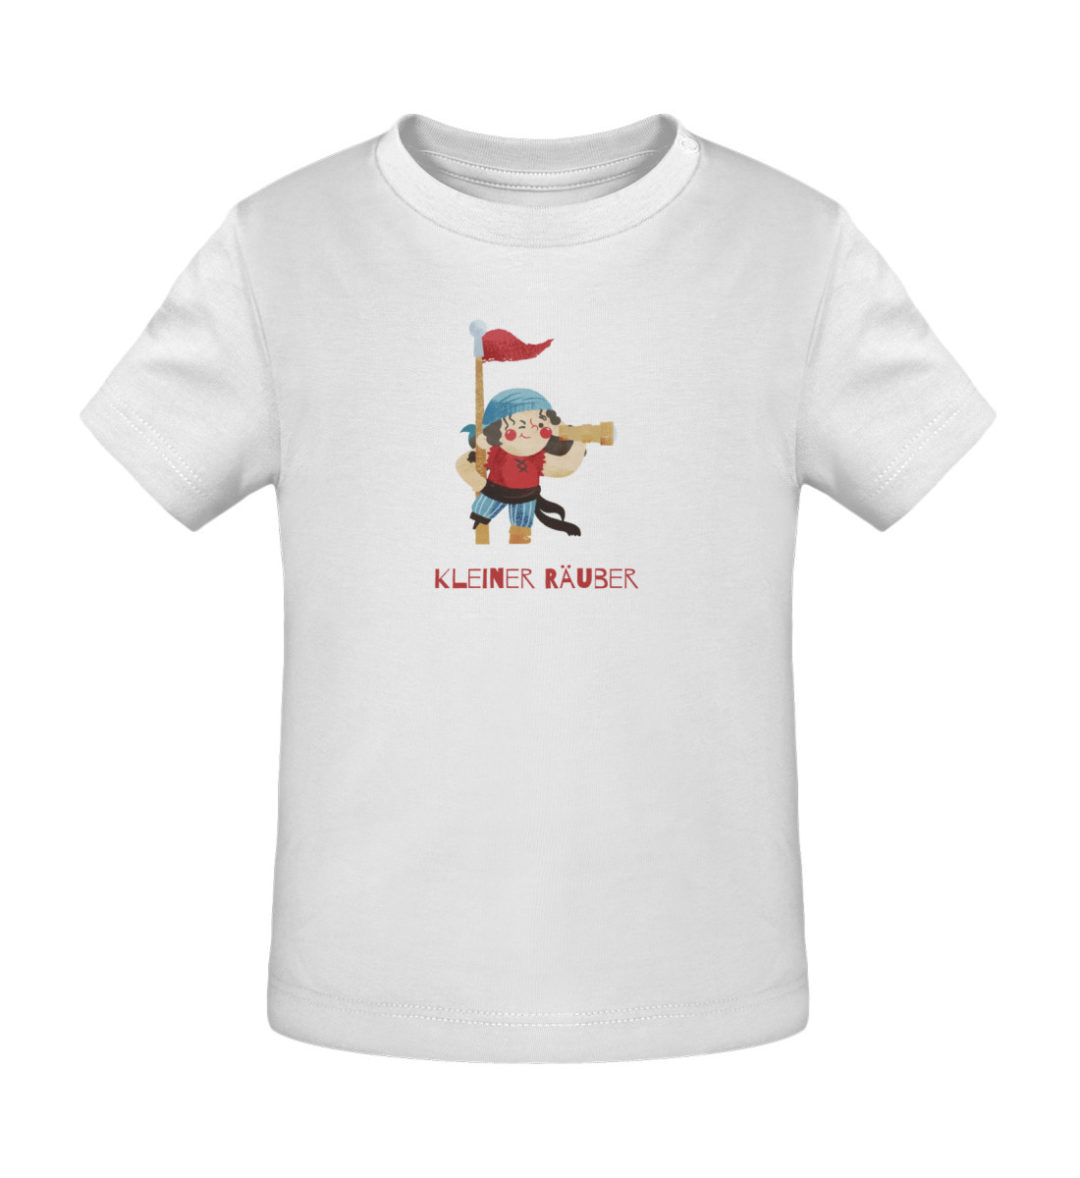 Kleiner Räuber - Baby Creator T-Shirt ST/ST-3